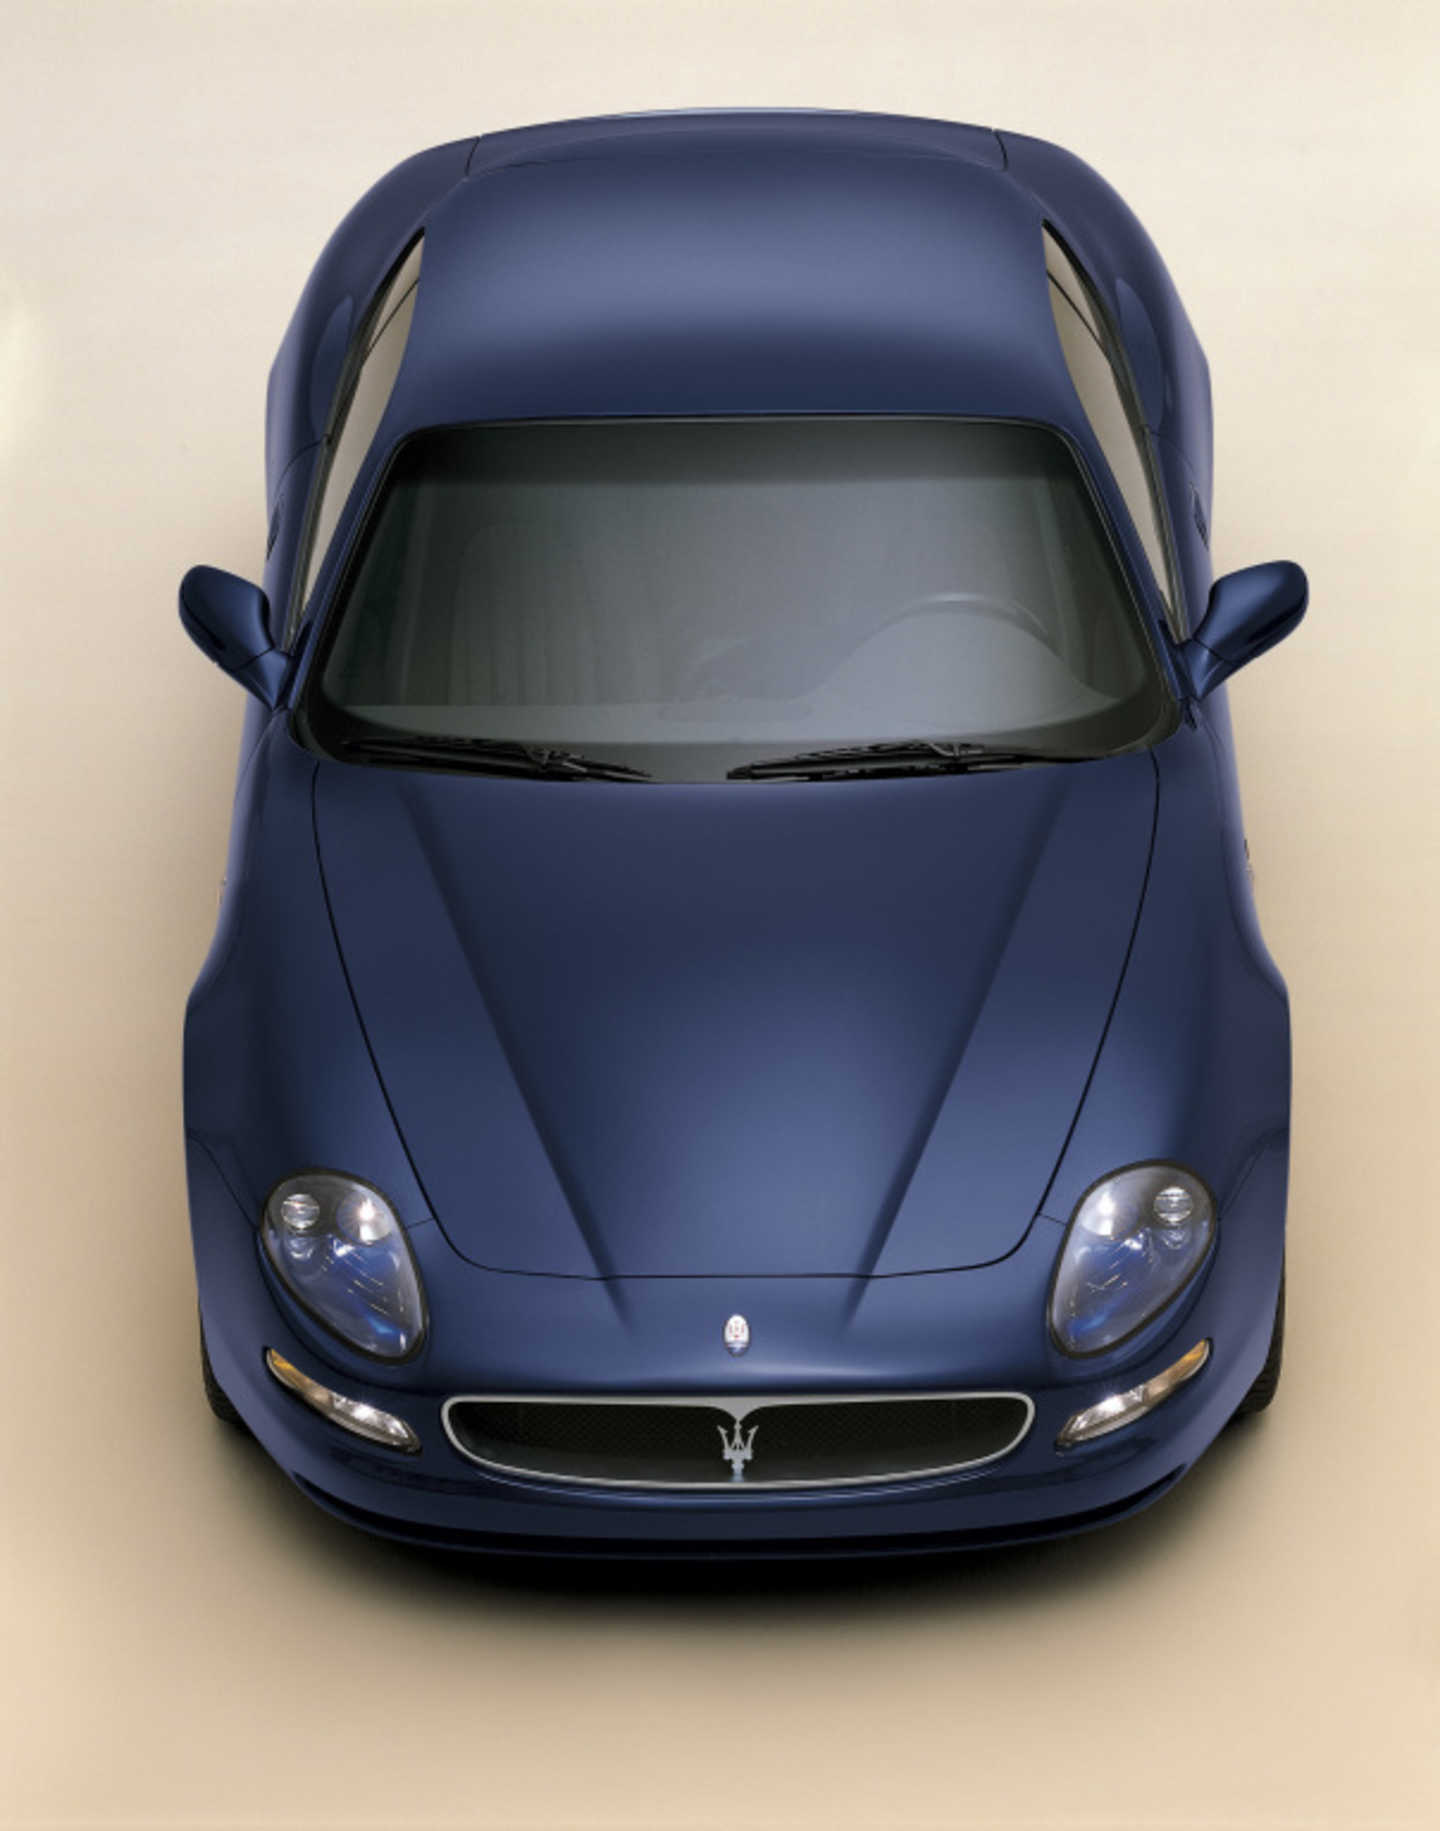 Maserati Coupé et Spyder 4200 de couleur bleu nuit vue de dessus